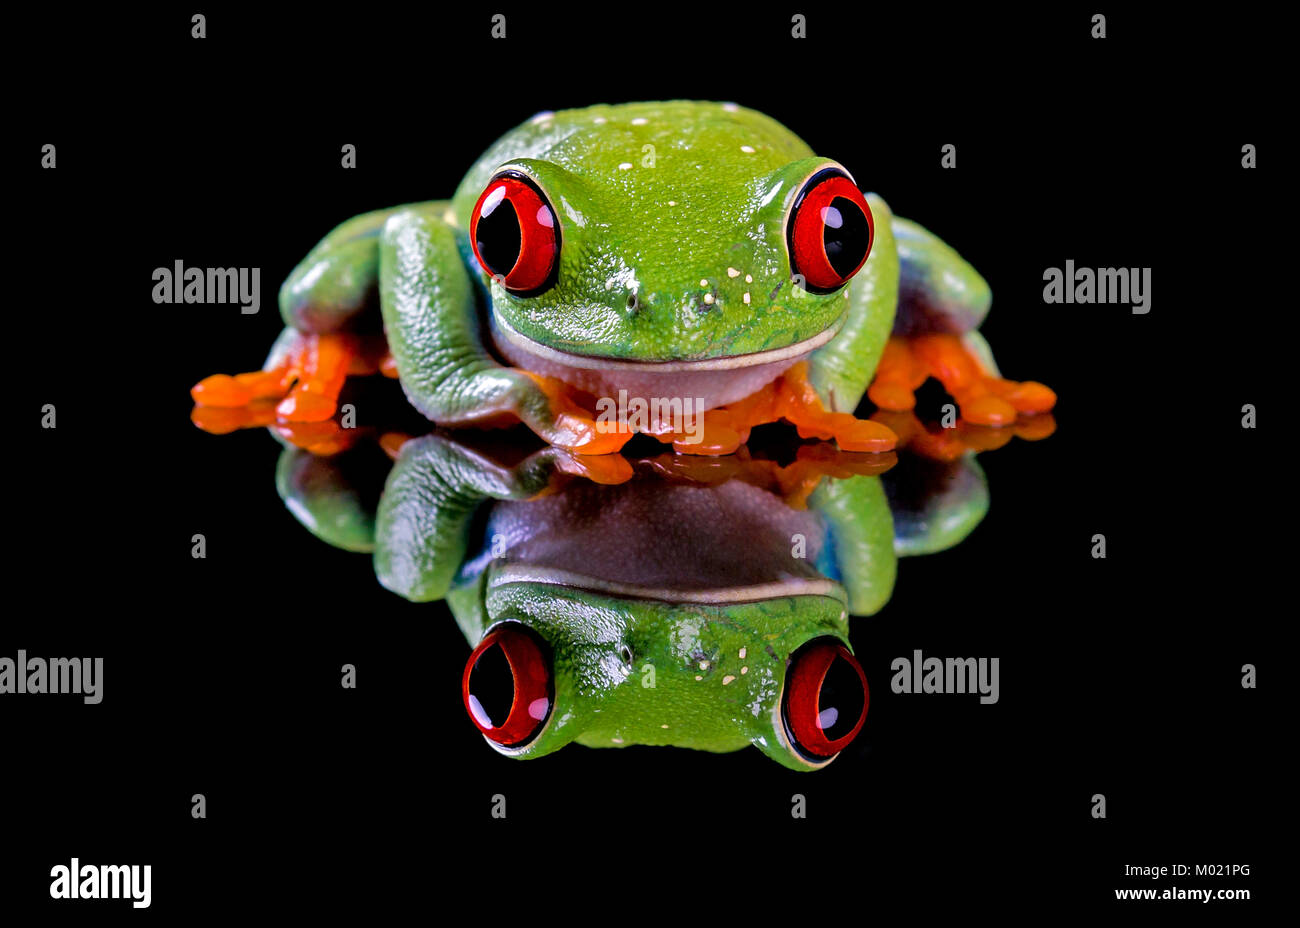 Ein niedliches Red Eyed Tree Frog, geduckt und Suchen schüchtern, mit einem glänzenden Reflexion und schwarze Kopie Raum. Mit. Stockfoto